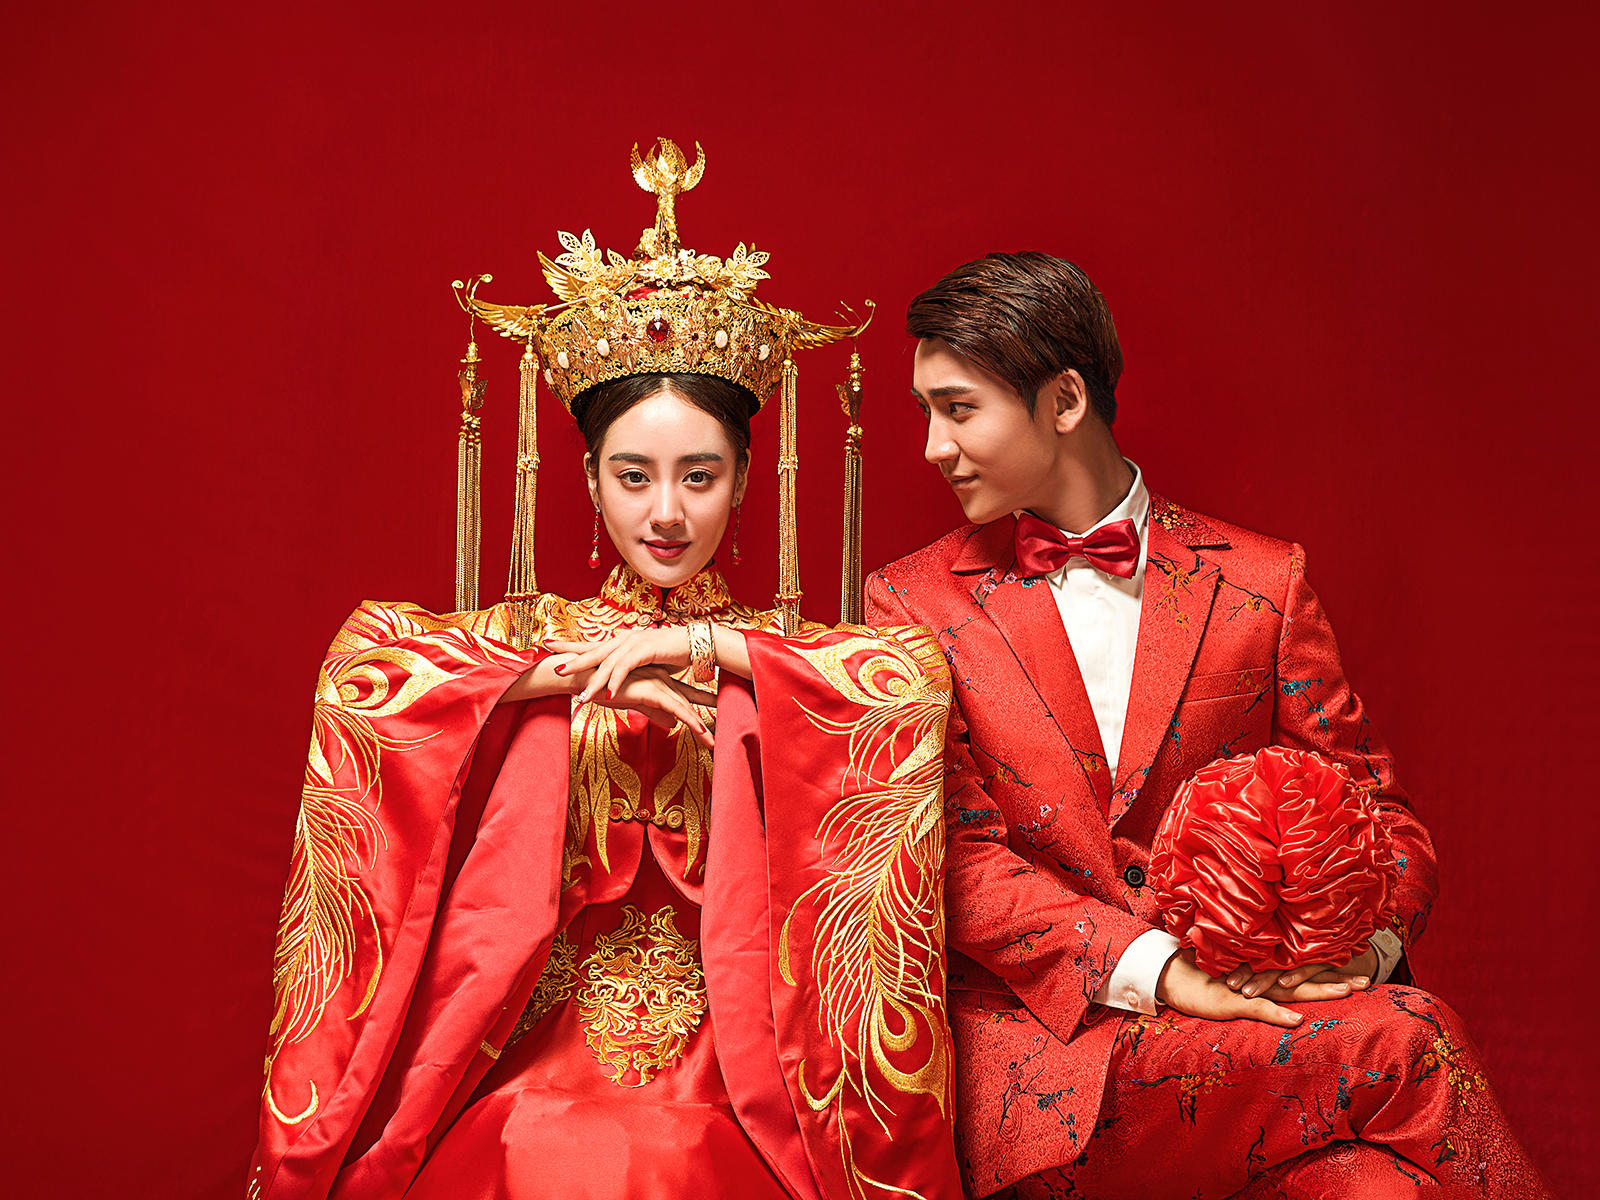 中国红婚纱图片_大气中国红婚纱(3)